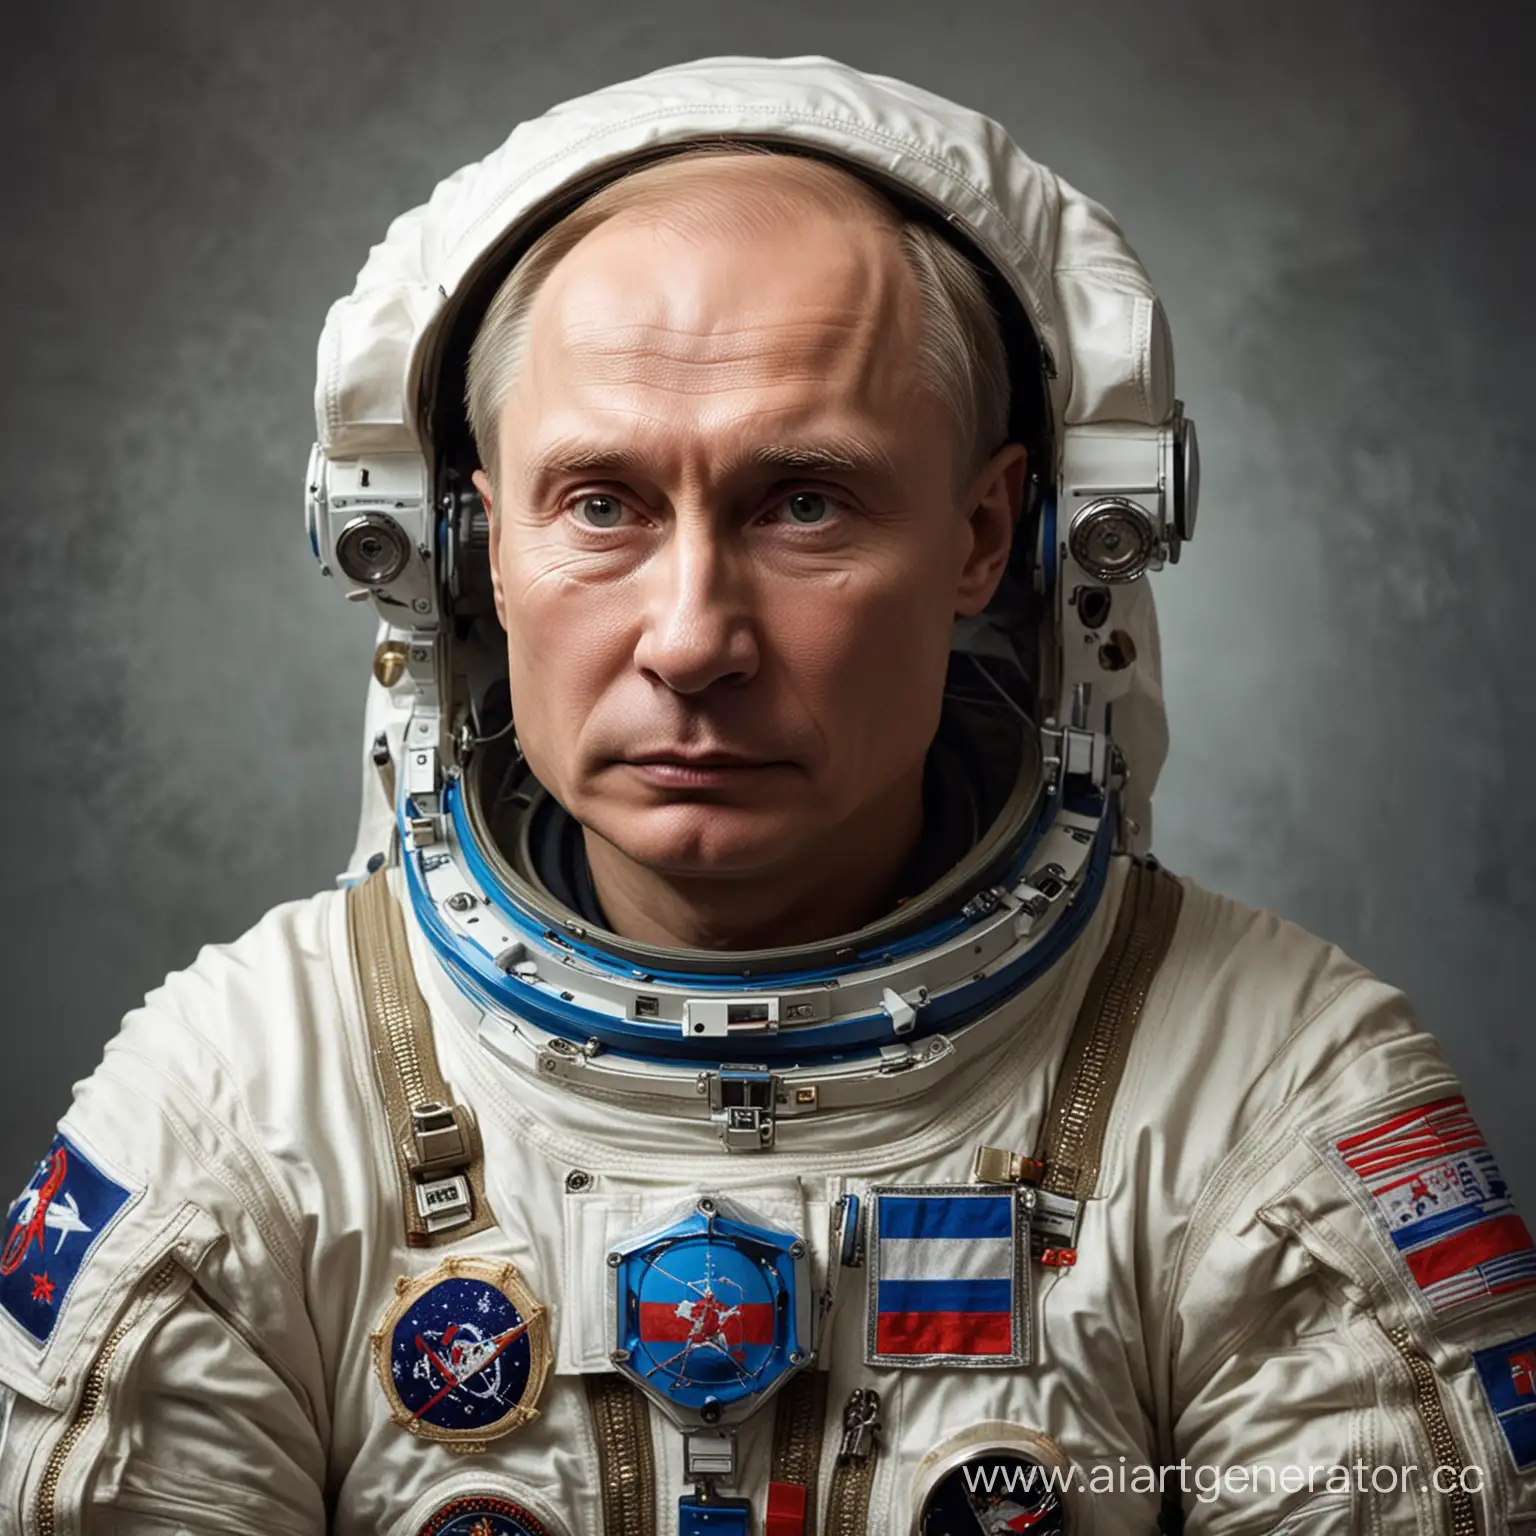 Putin-Cosmonaut-in-Space-Suit-Portrait